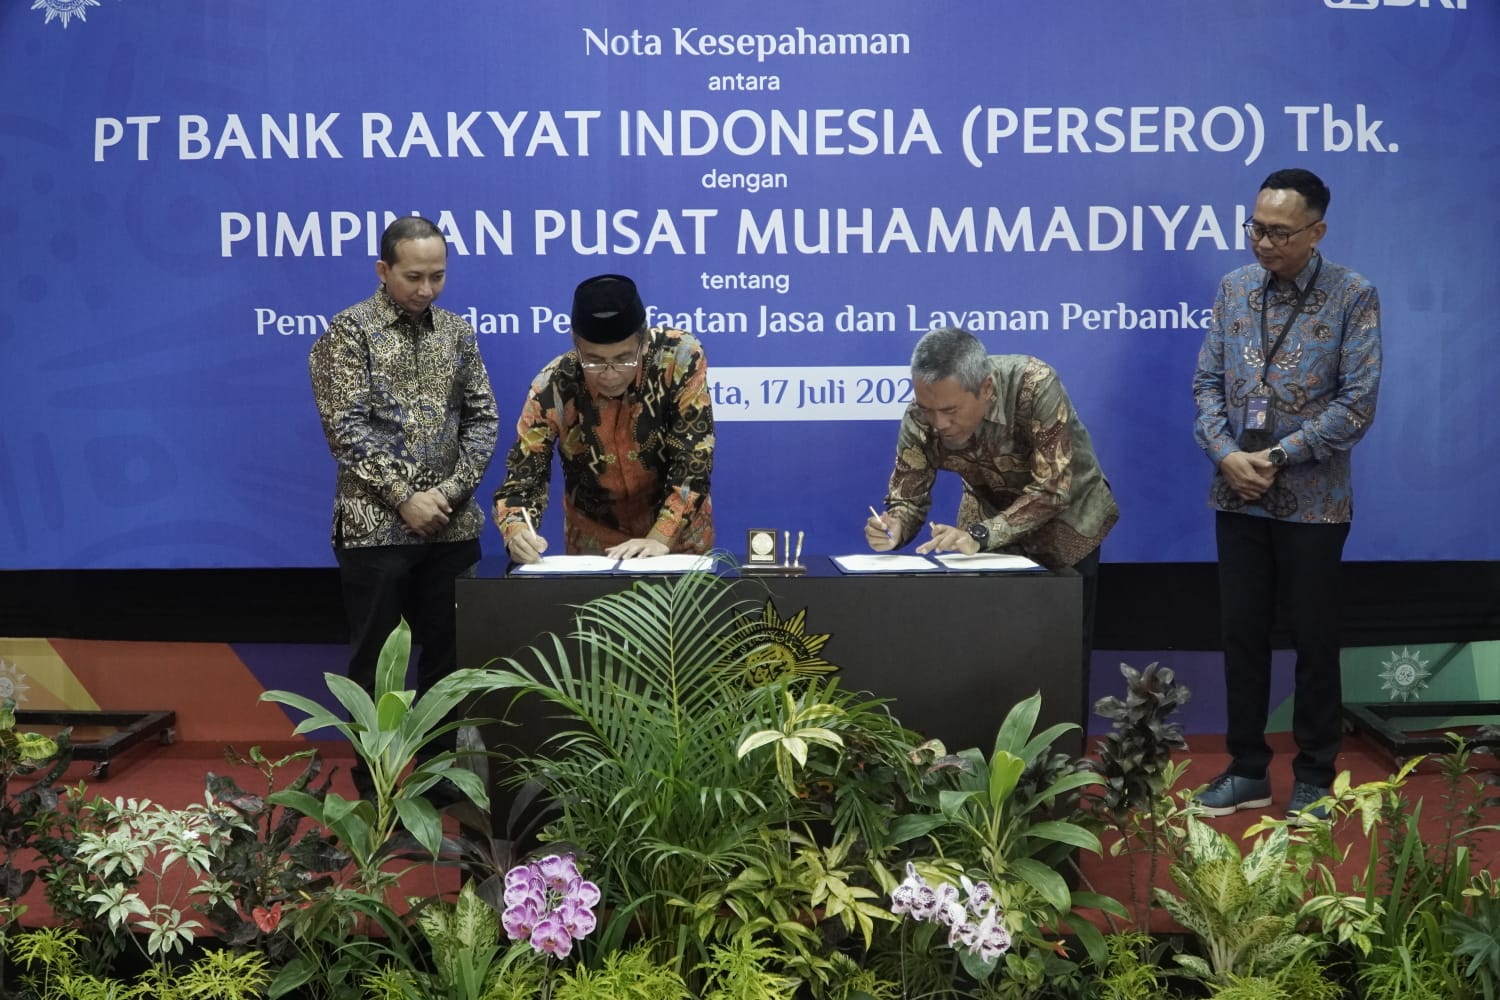 Jalin Sinergi, BRI Beri Kemudahan Jasa dan Layanan Perbankan Bagi Muhammadiyah